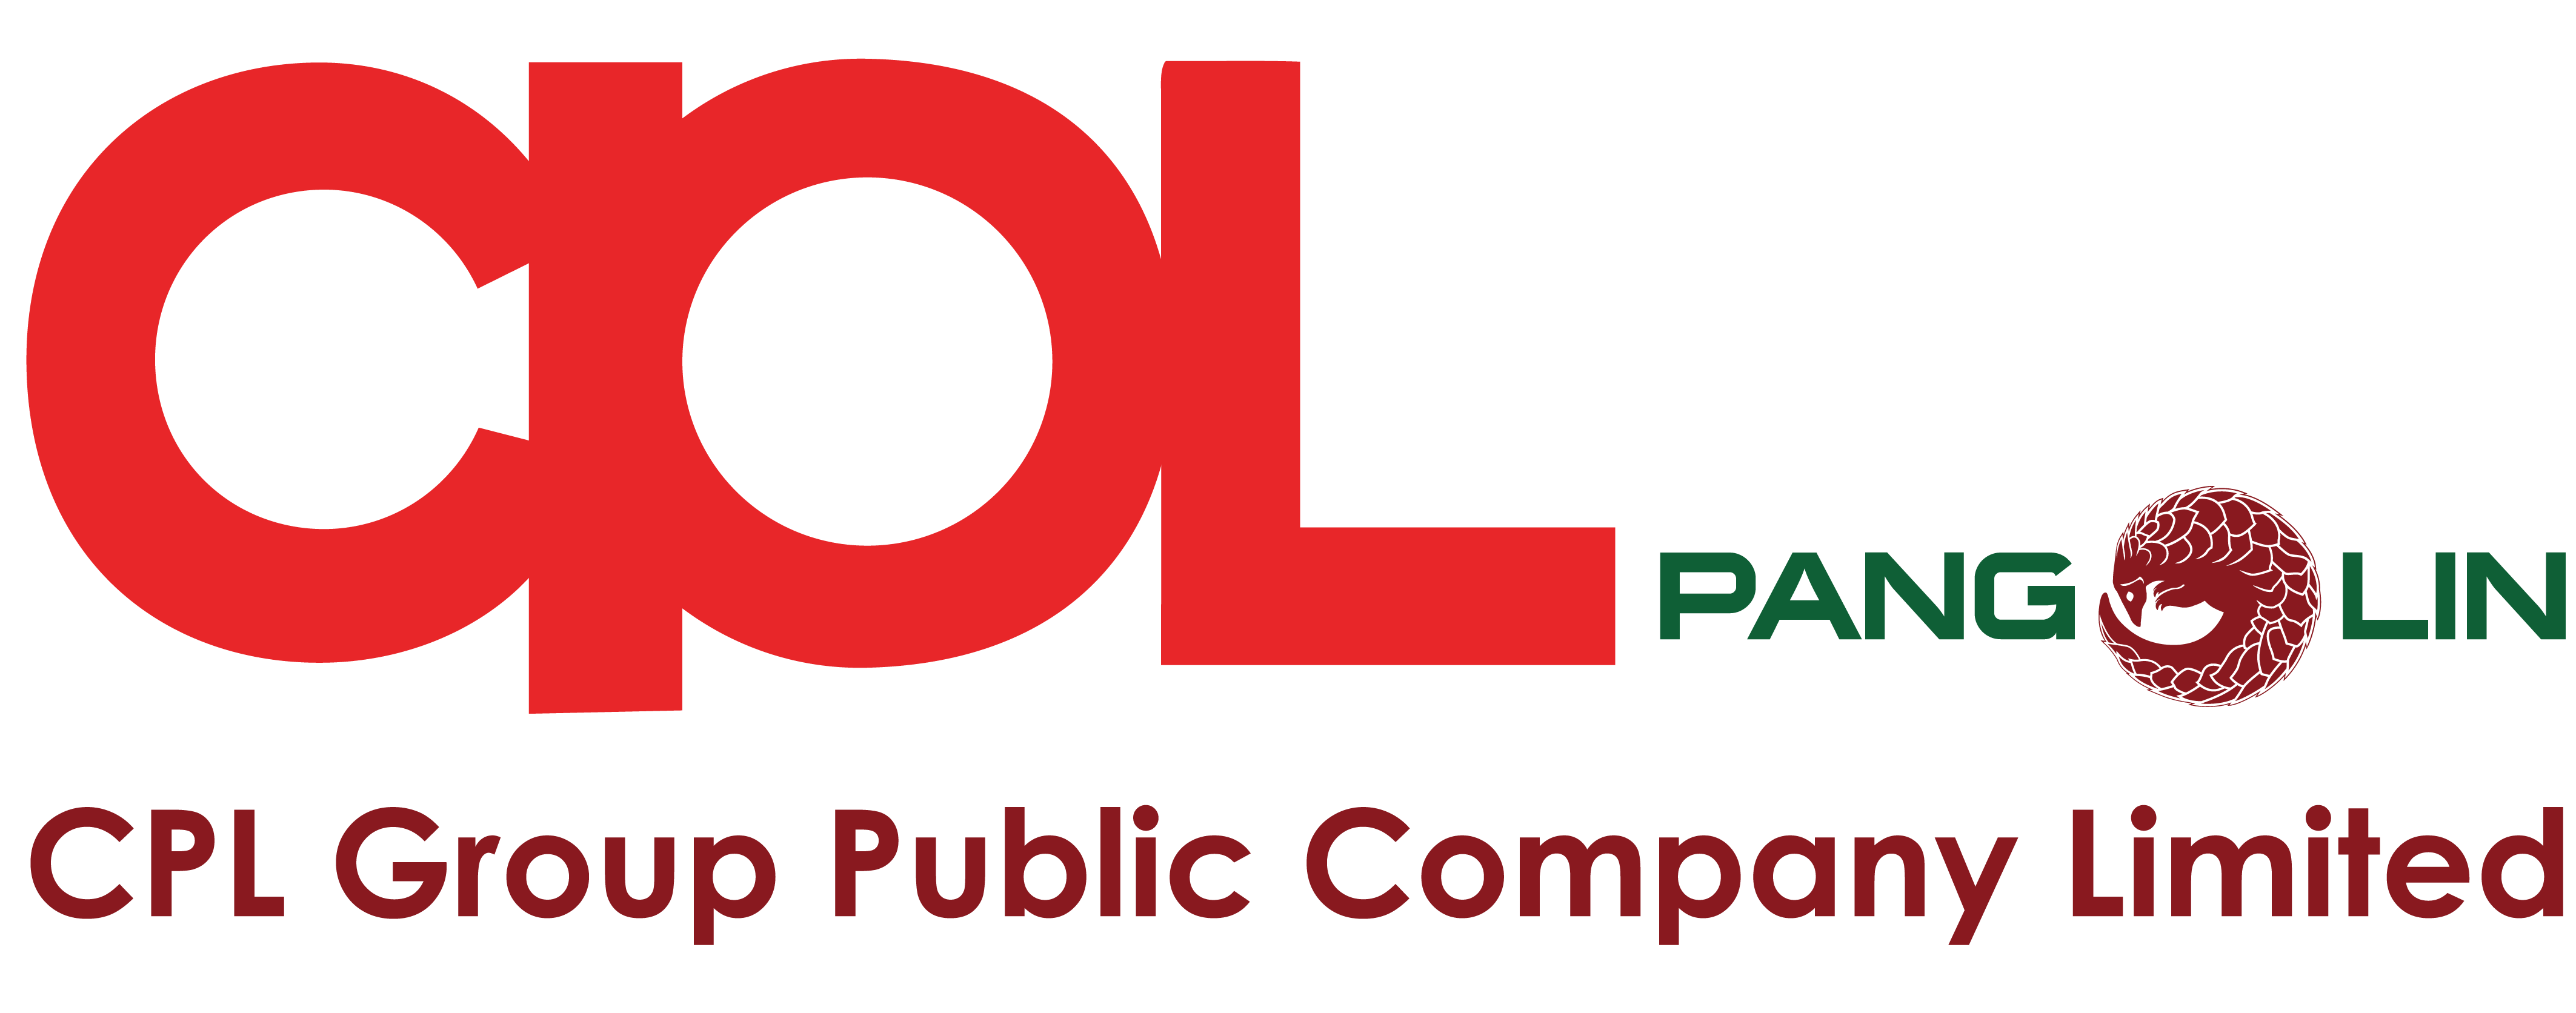 บริษัท ซีพีแอล กรุ๊ป จำกัด (มหาชน) logo โลโก้